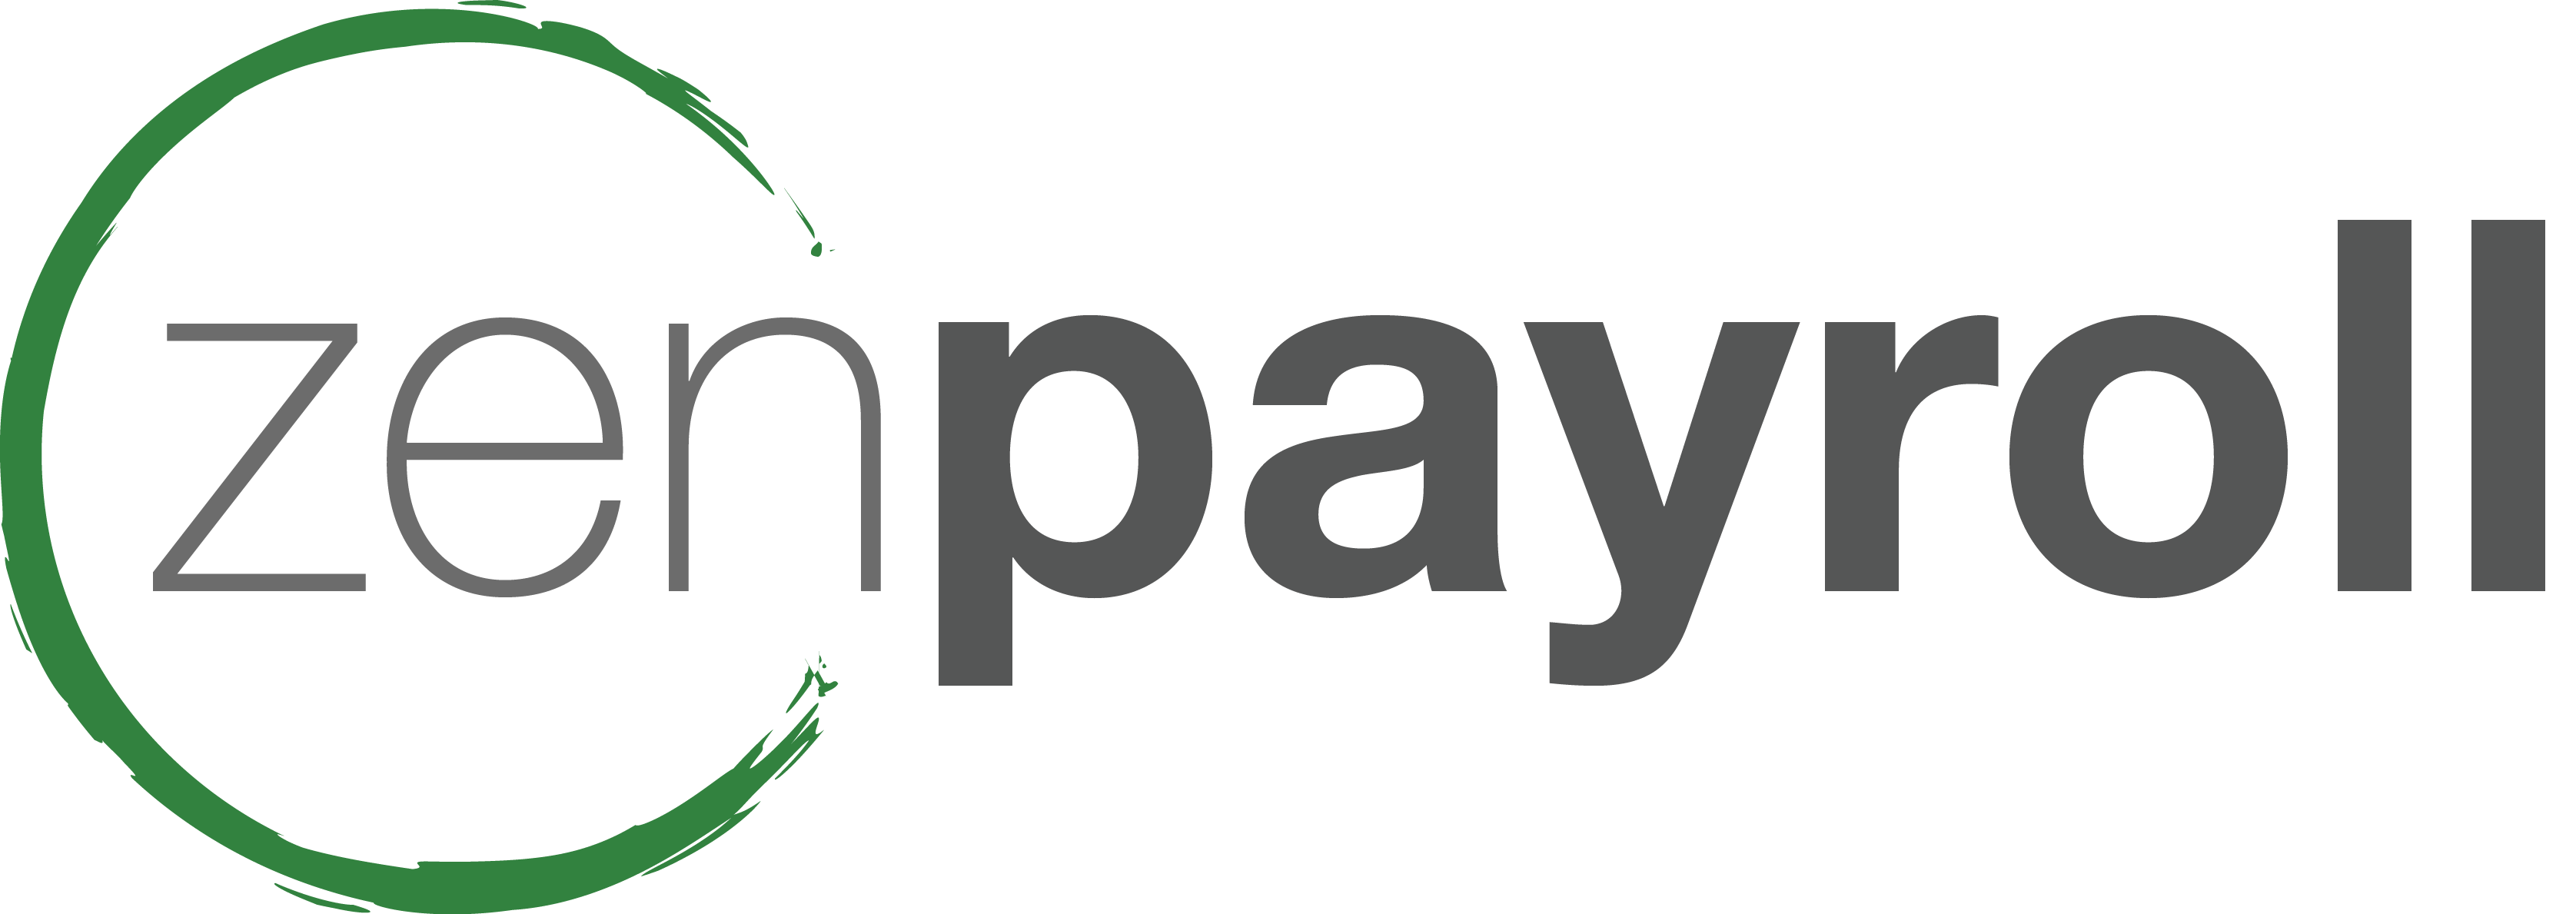 Payroll Logo - zenpayroll logo Assure LLC